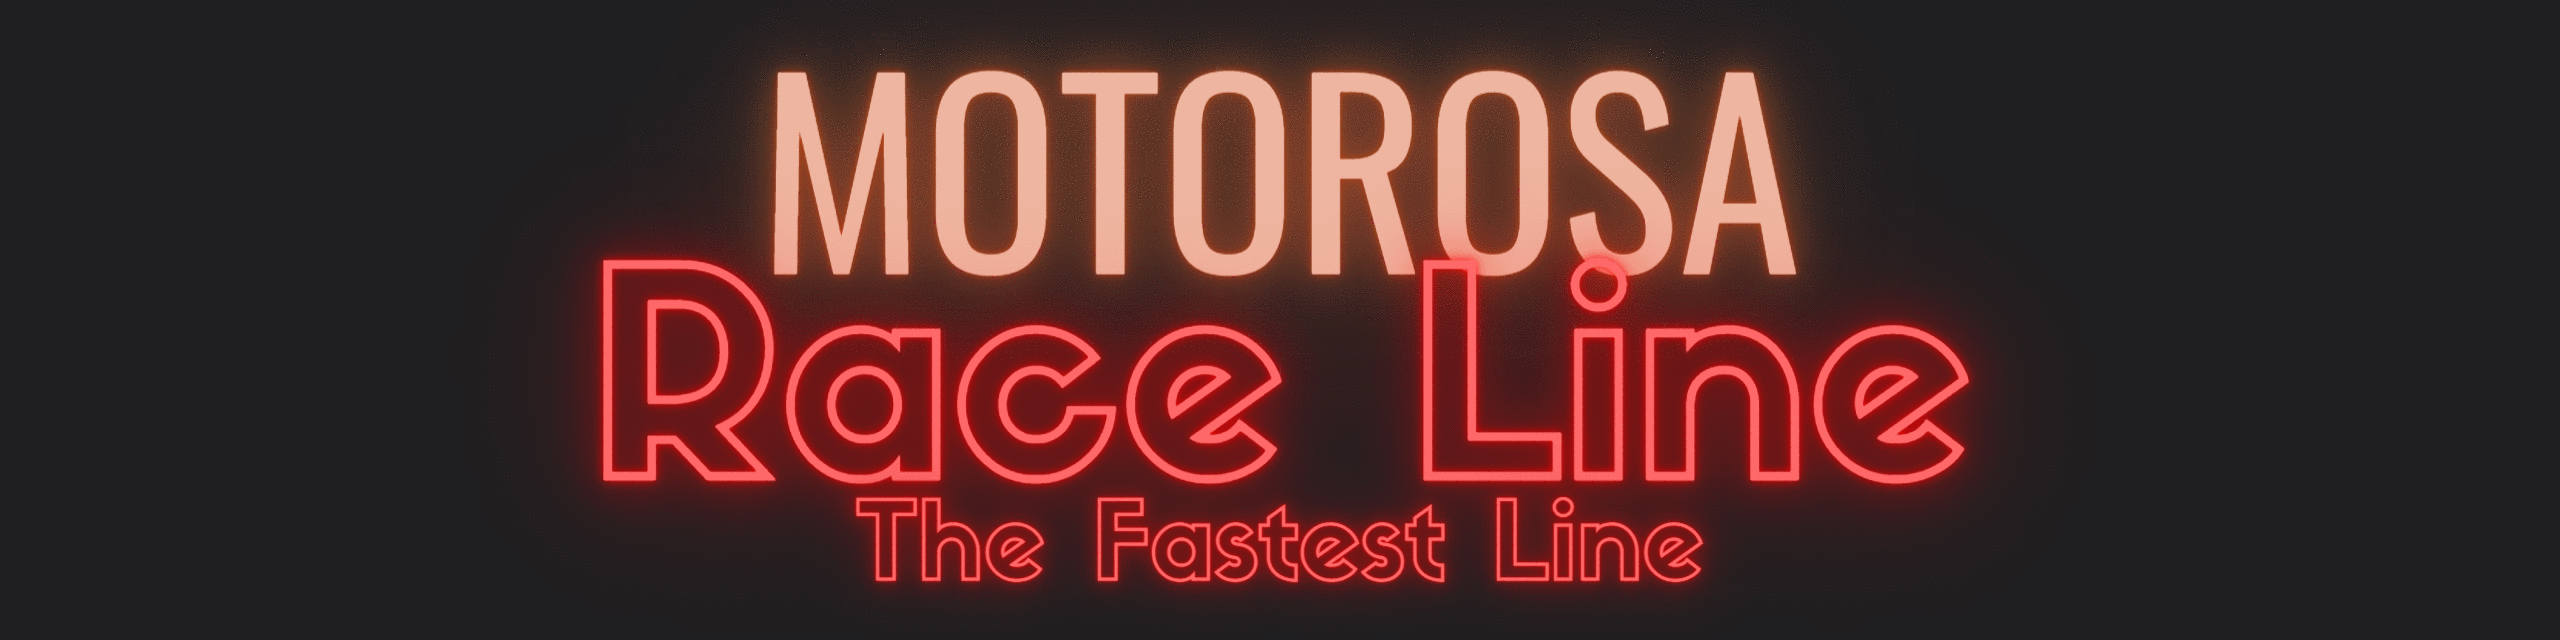 Motorosa Race Line Banner